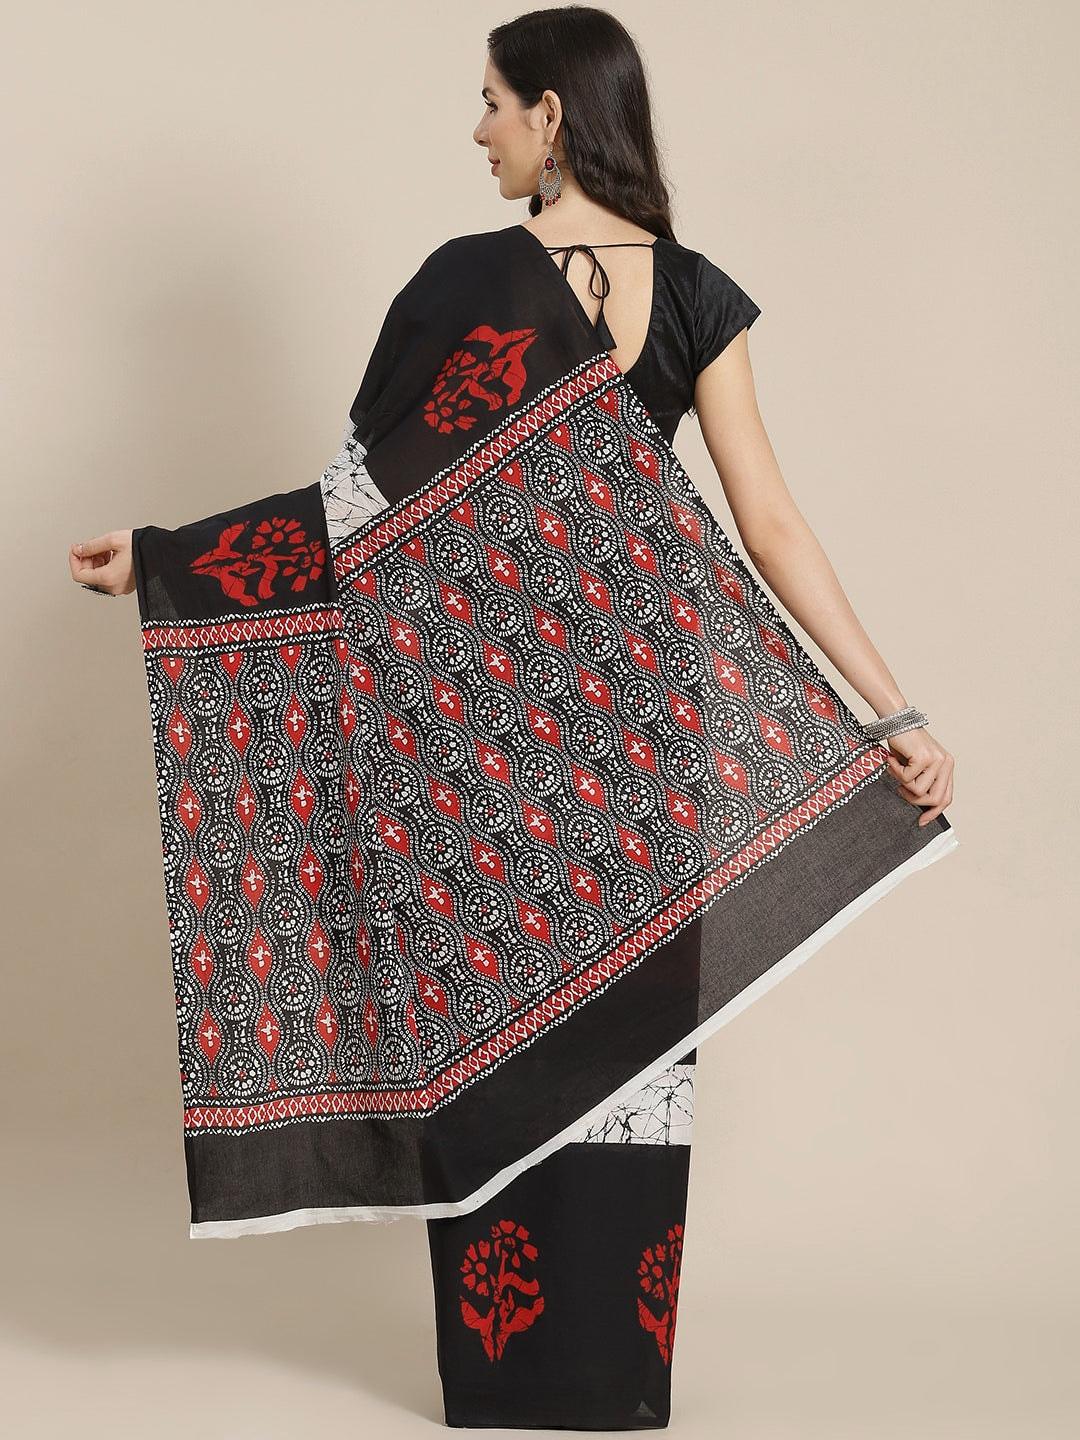 Black Printed Cotton Saree - Libas